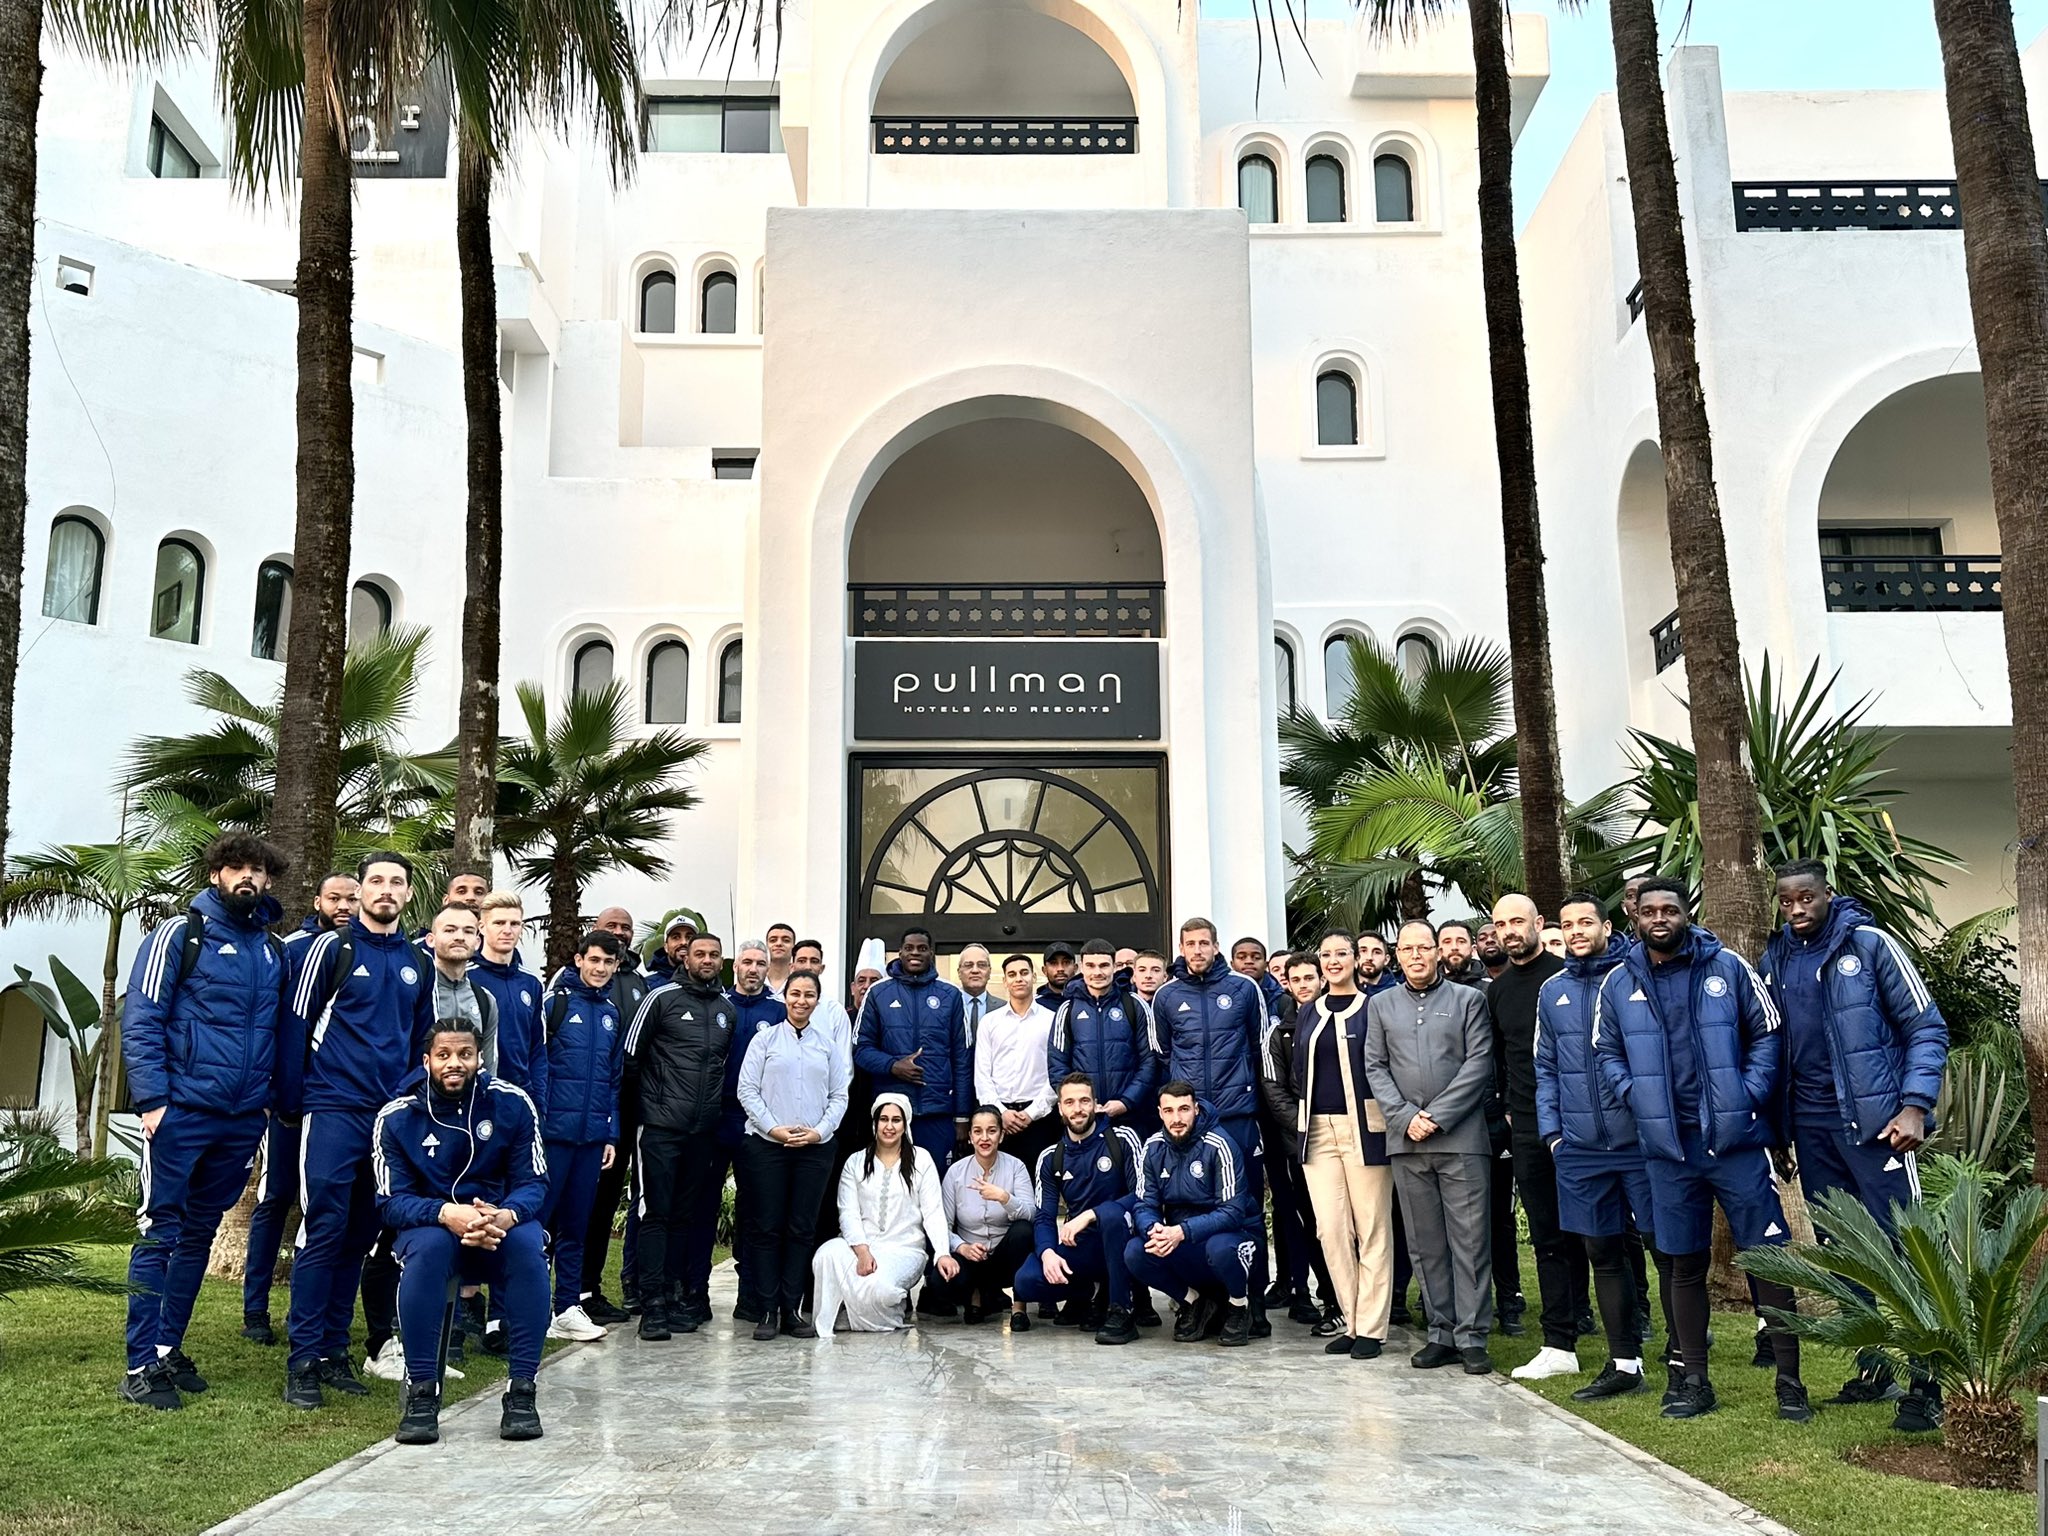 A Casablanca (Maroc), les joueurs du FC Versailles posent devant l'hôtel Pullman Mazagan qui les a accueillis durant leur stage de six jours. FC Versailles/Twitter